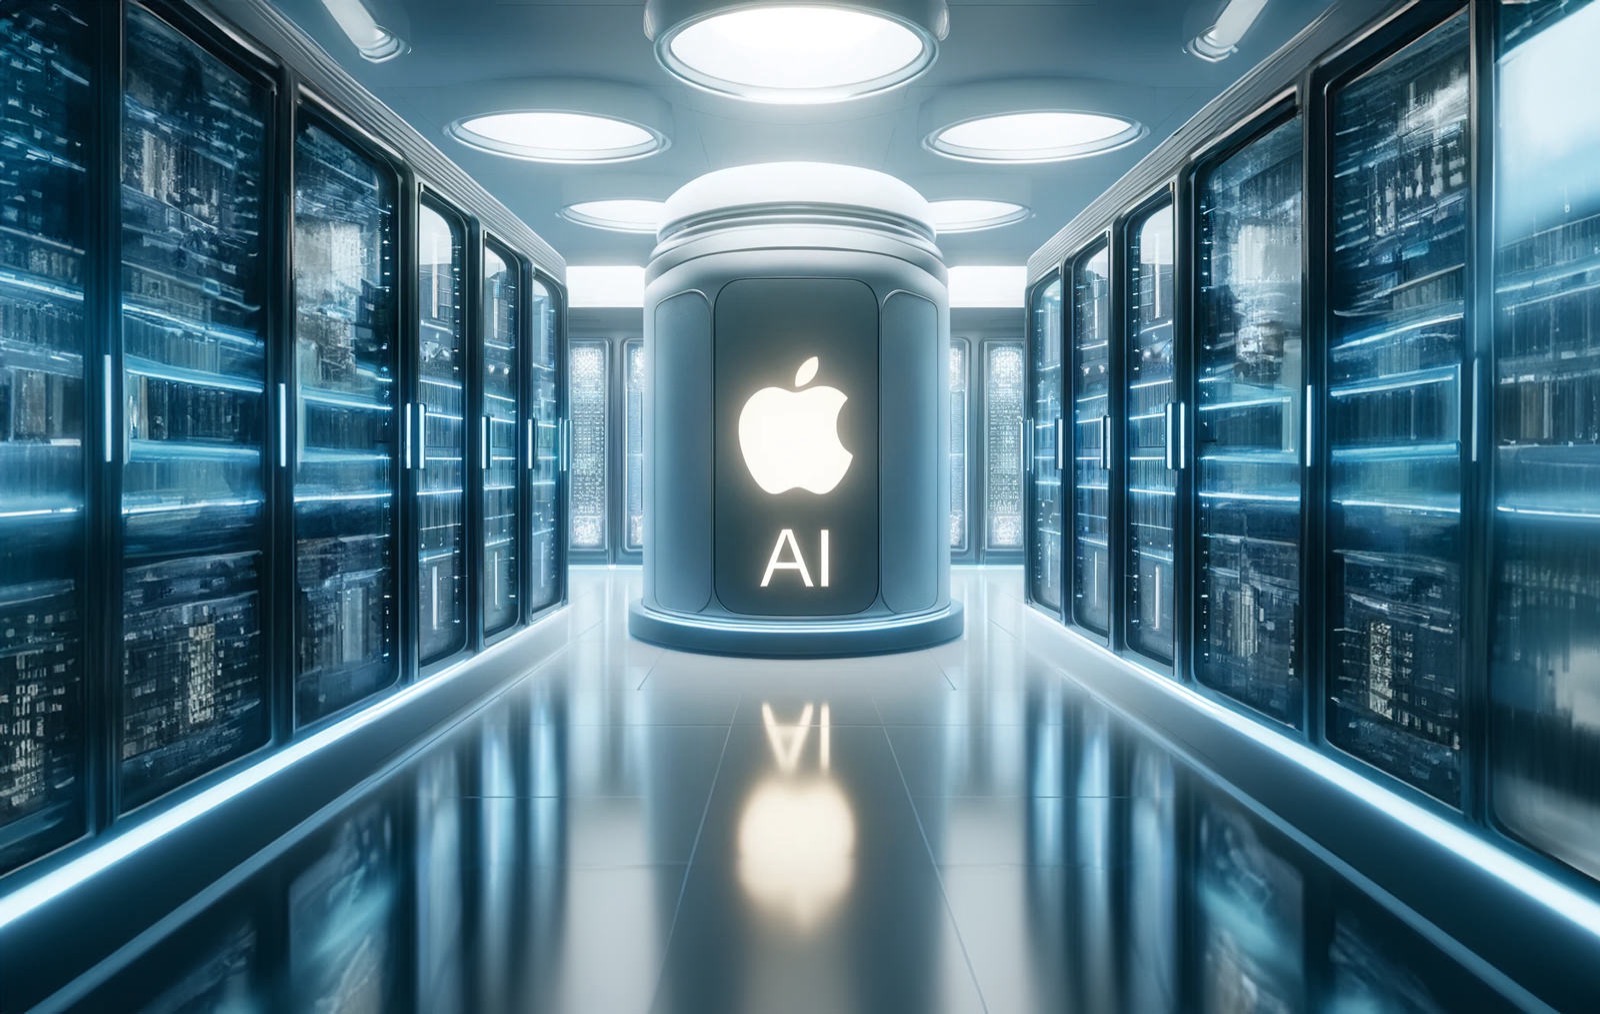 AI Apple Servers Image